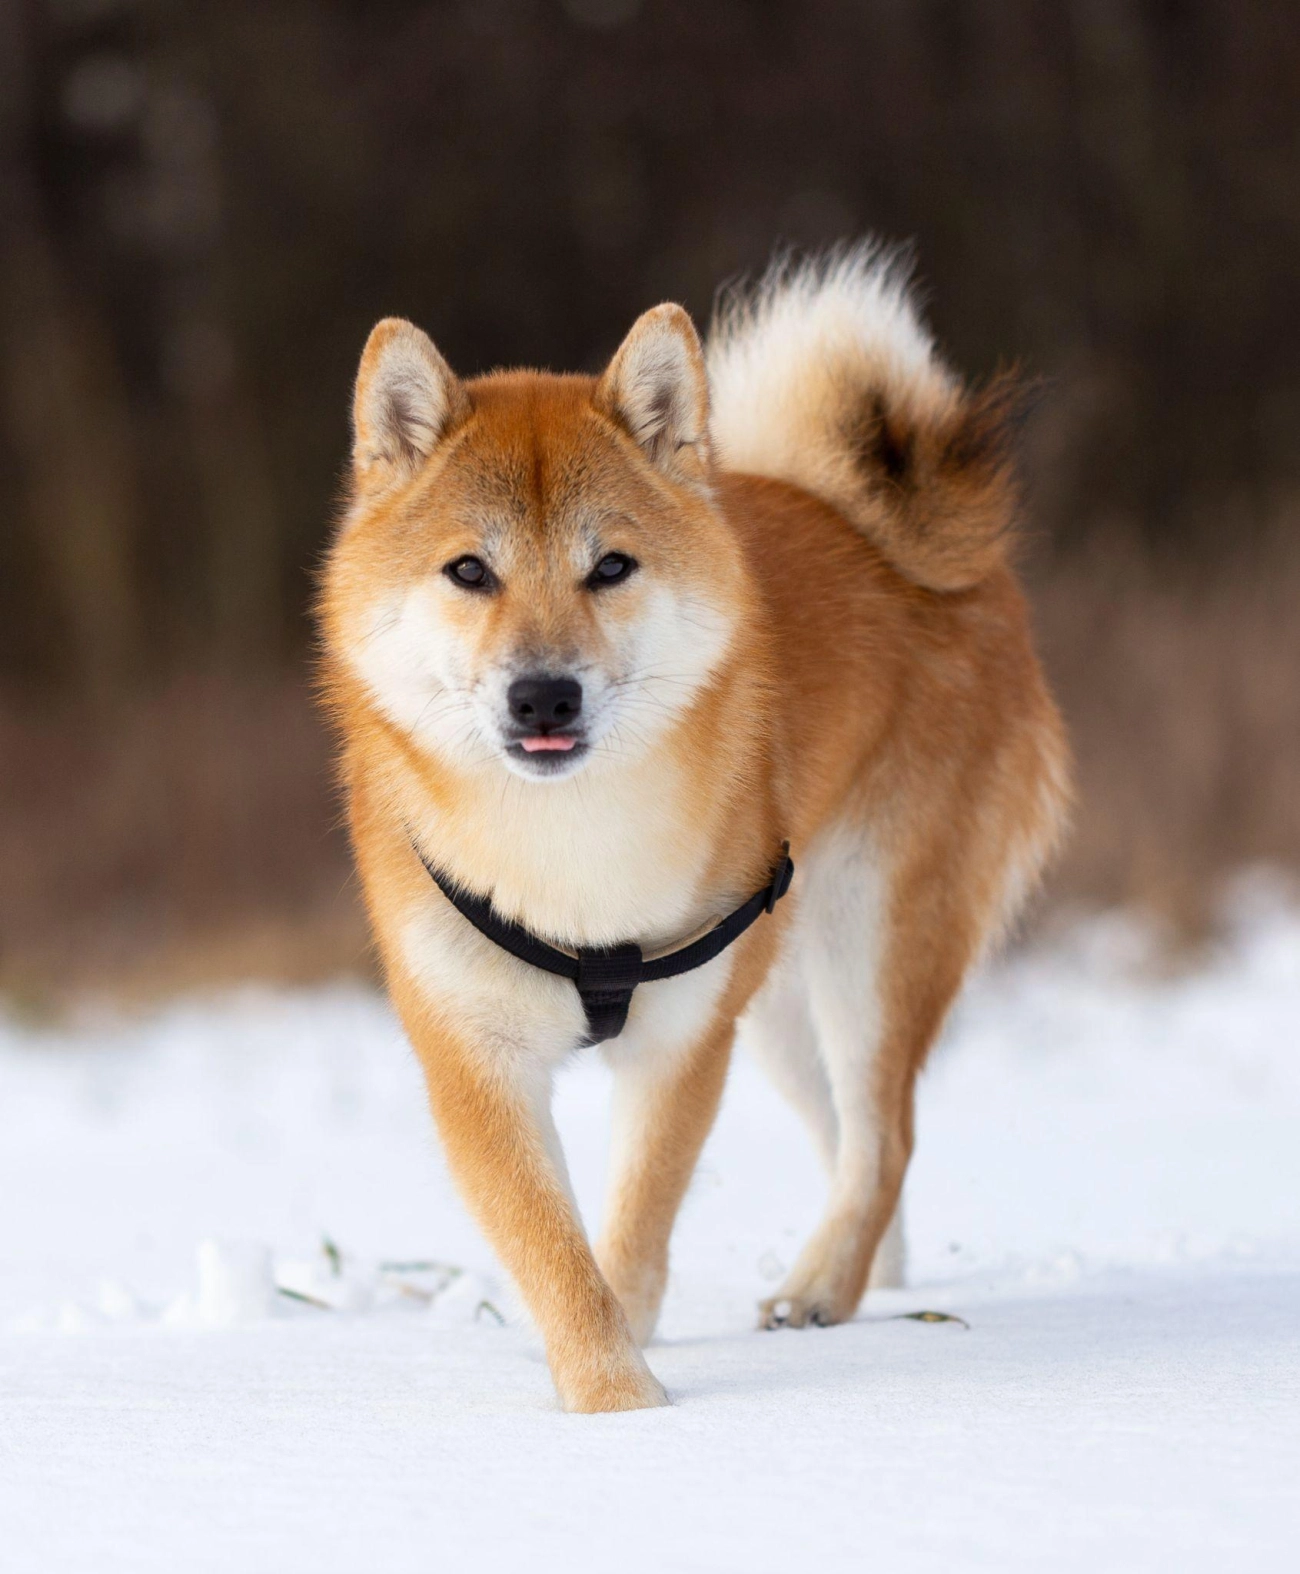 Shiba loài chó nổi tiếng vì khuôn mặt phúc hậu và hay cười - 2